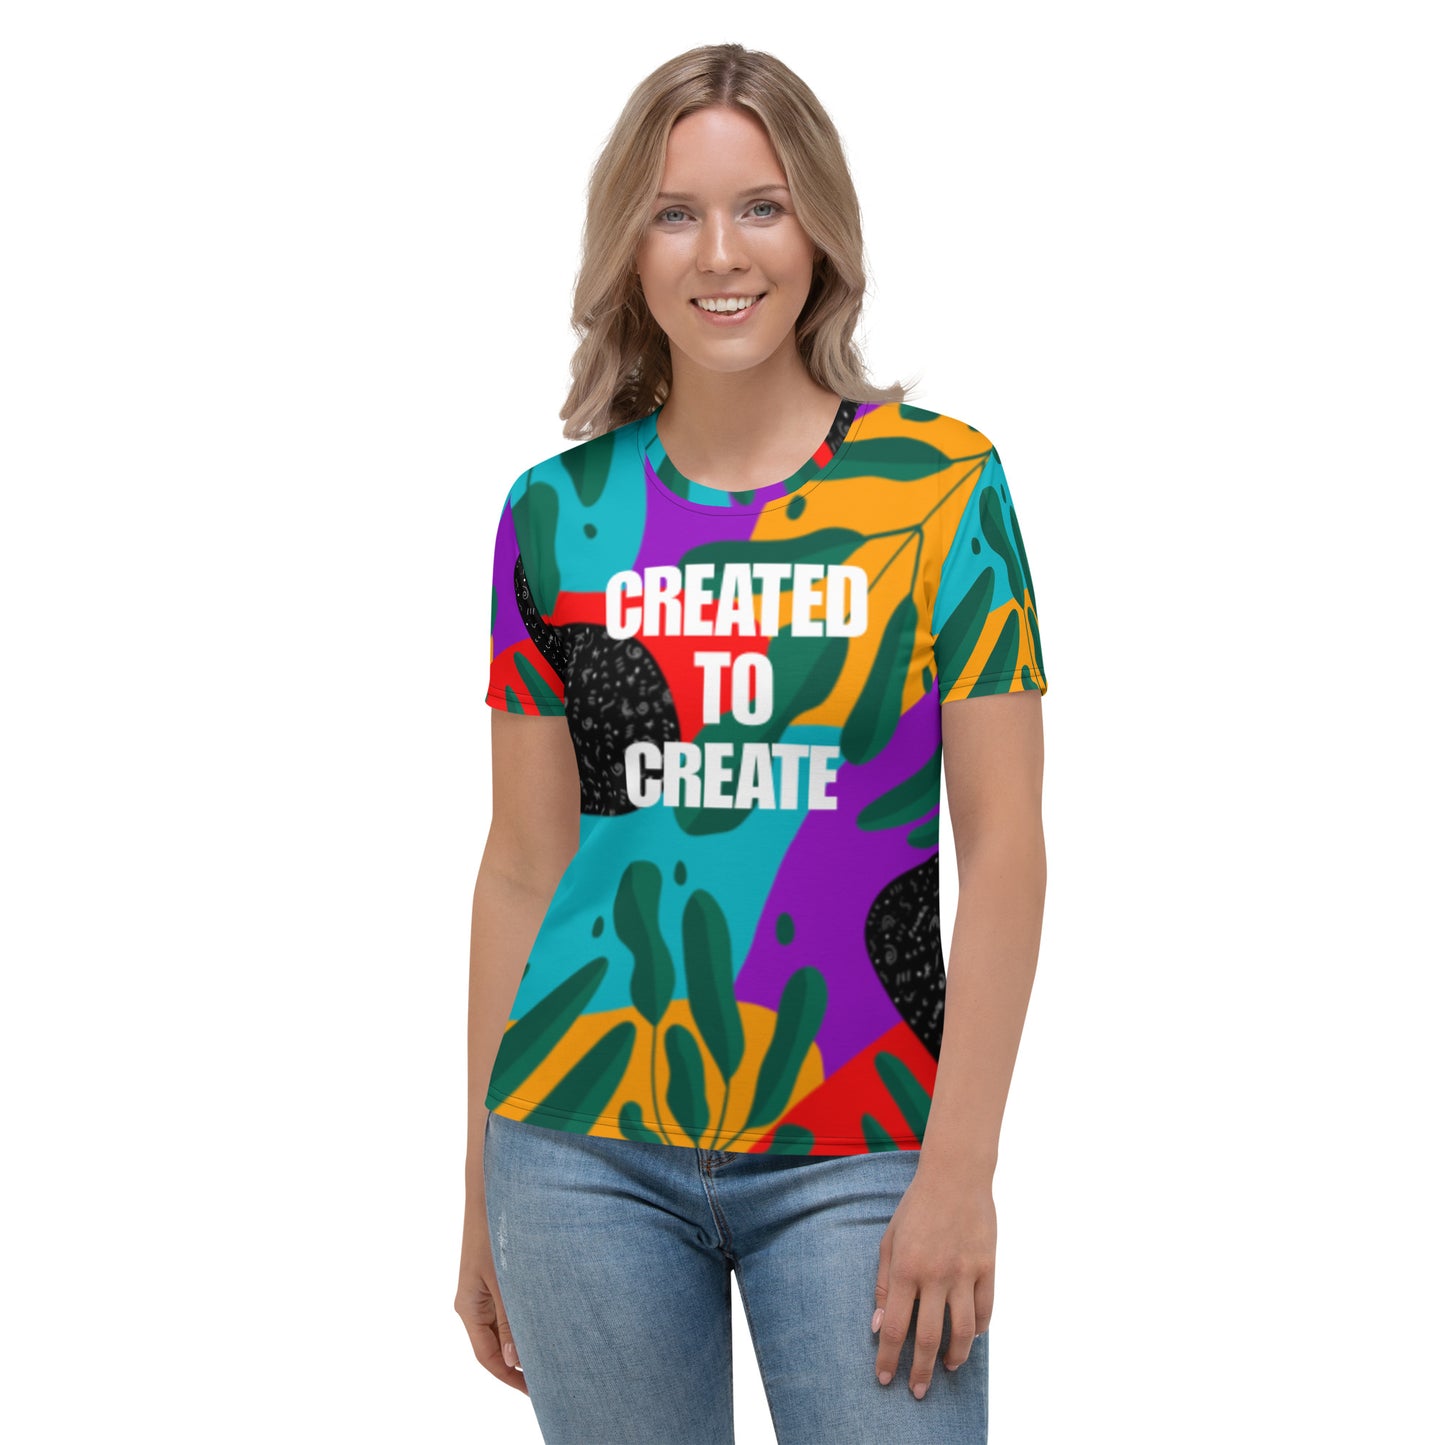 Created To Create Women's T-Shirt